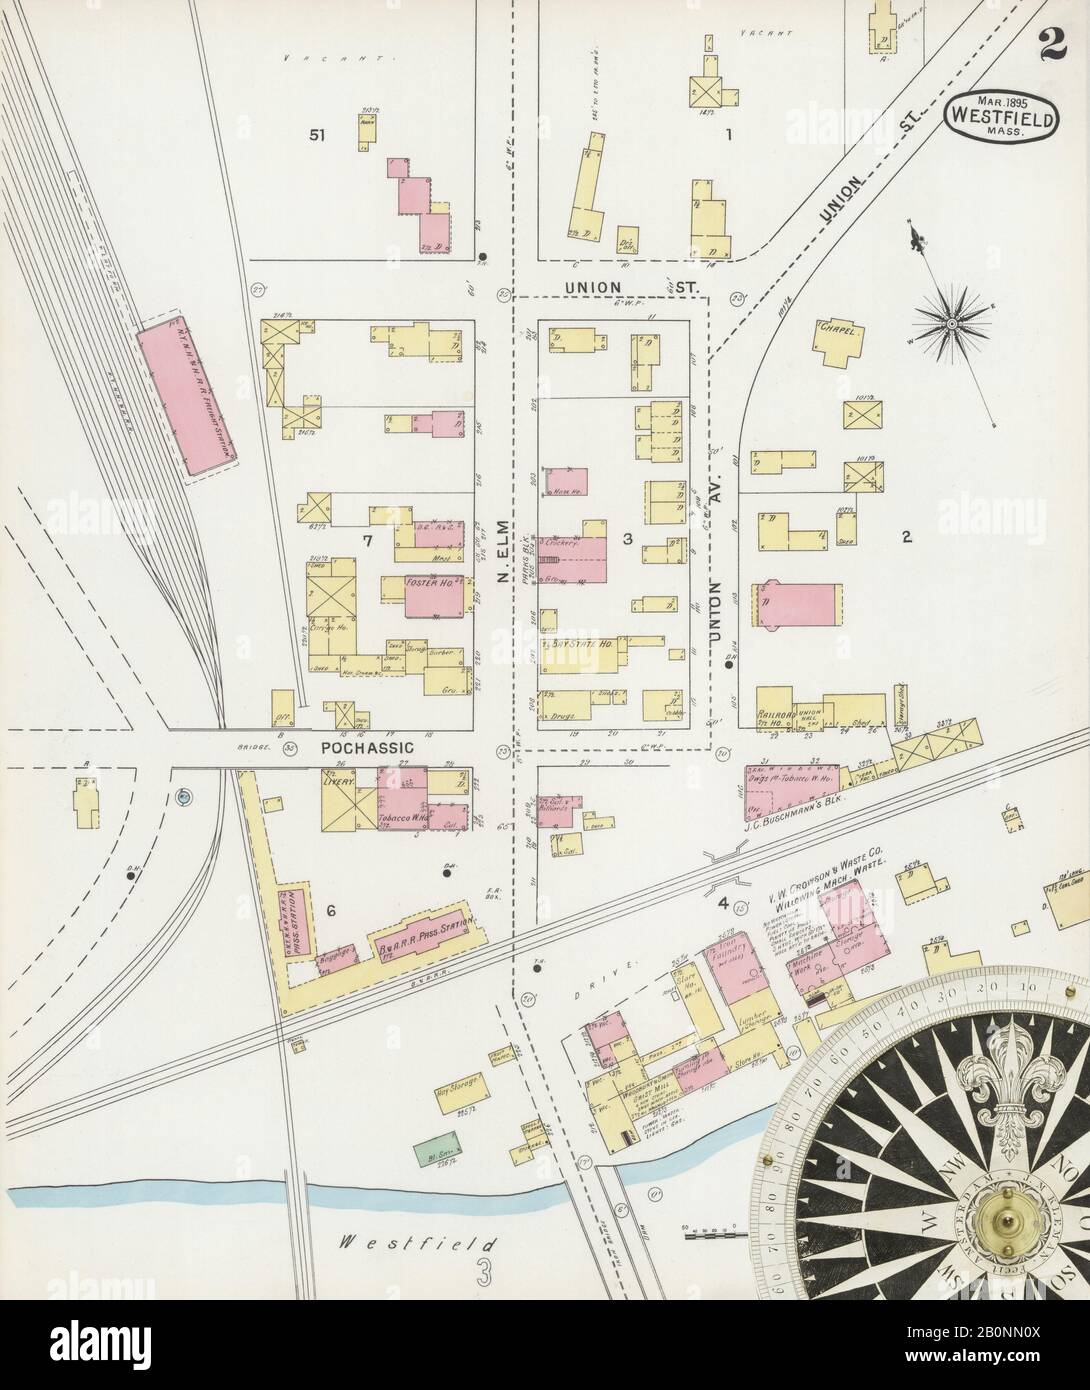 Bild 2 von Sanborn Fire Insurance Map aus Westfield, Hampden County, Massachusetts. Feb. 12 Blatt(e), Amerika, Straßenkarte mit einem Kompass Aus Dem 19. Jahrhundert Stockfoto